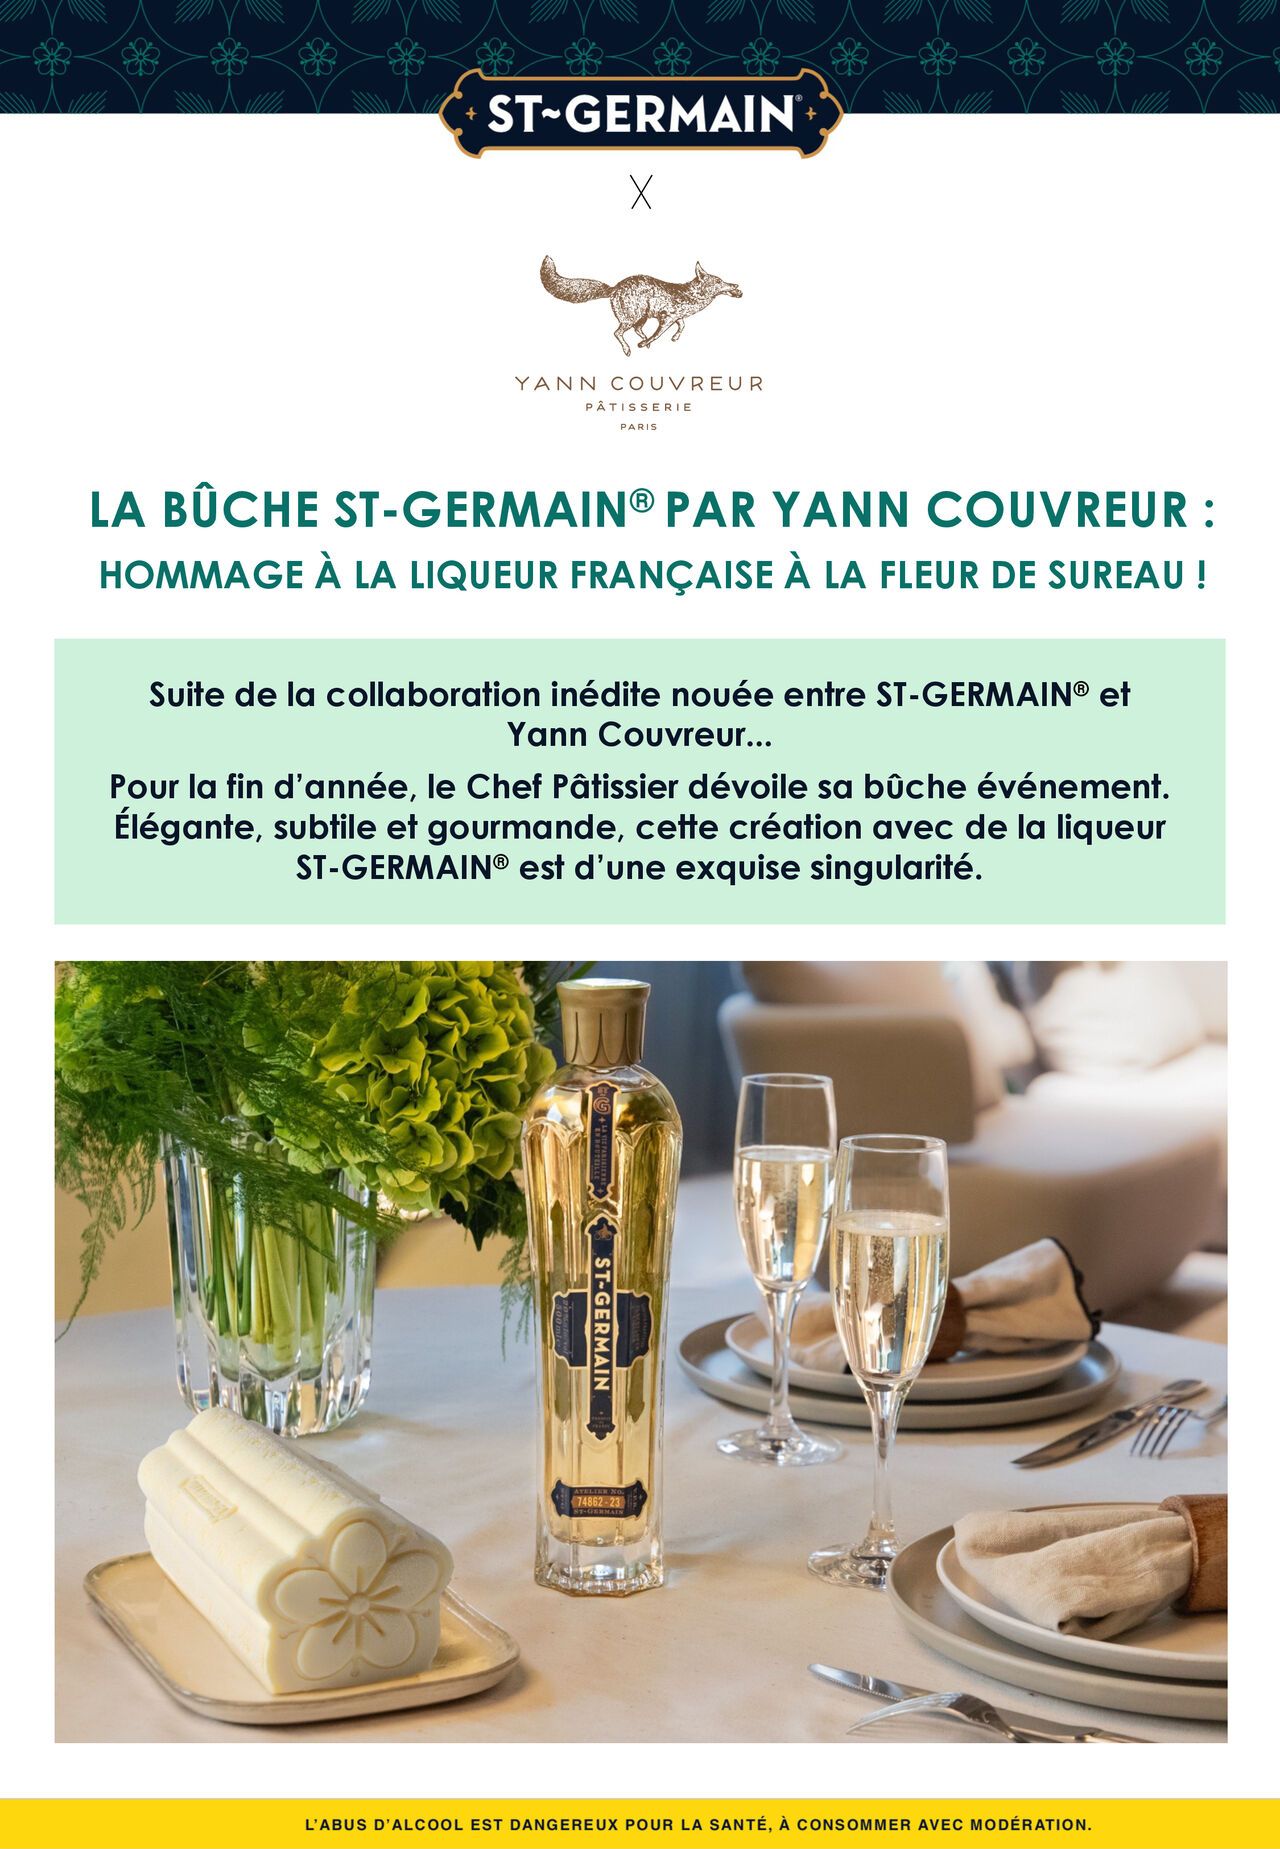 St-Germain Fleur de Sureau - Le Comptoir des Vins